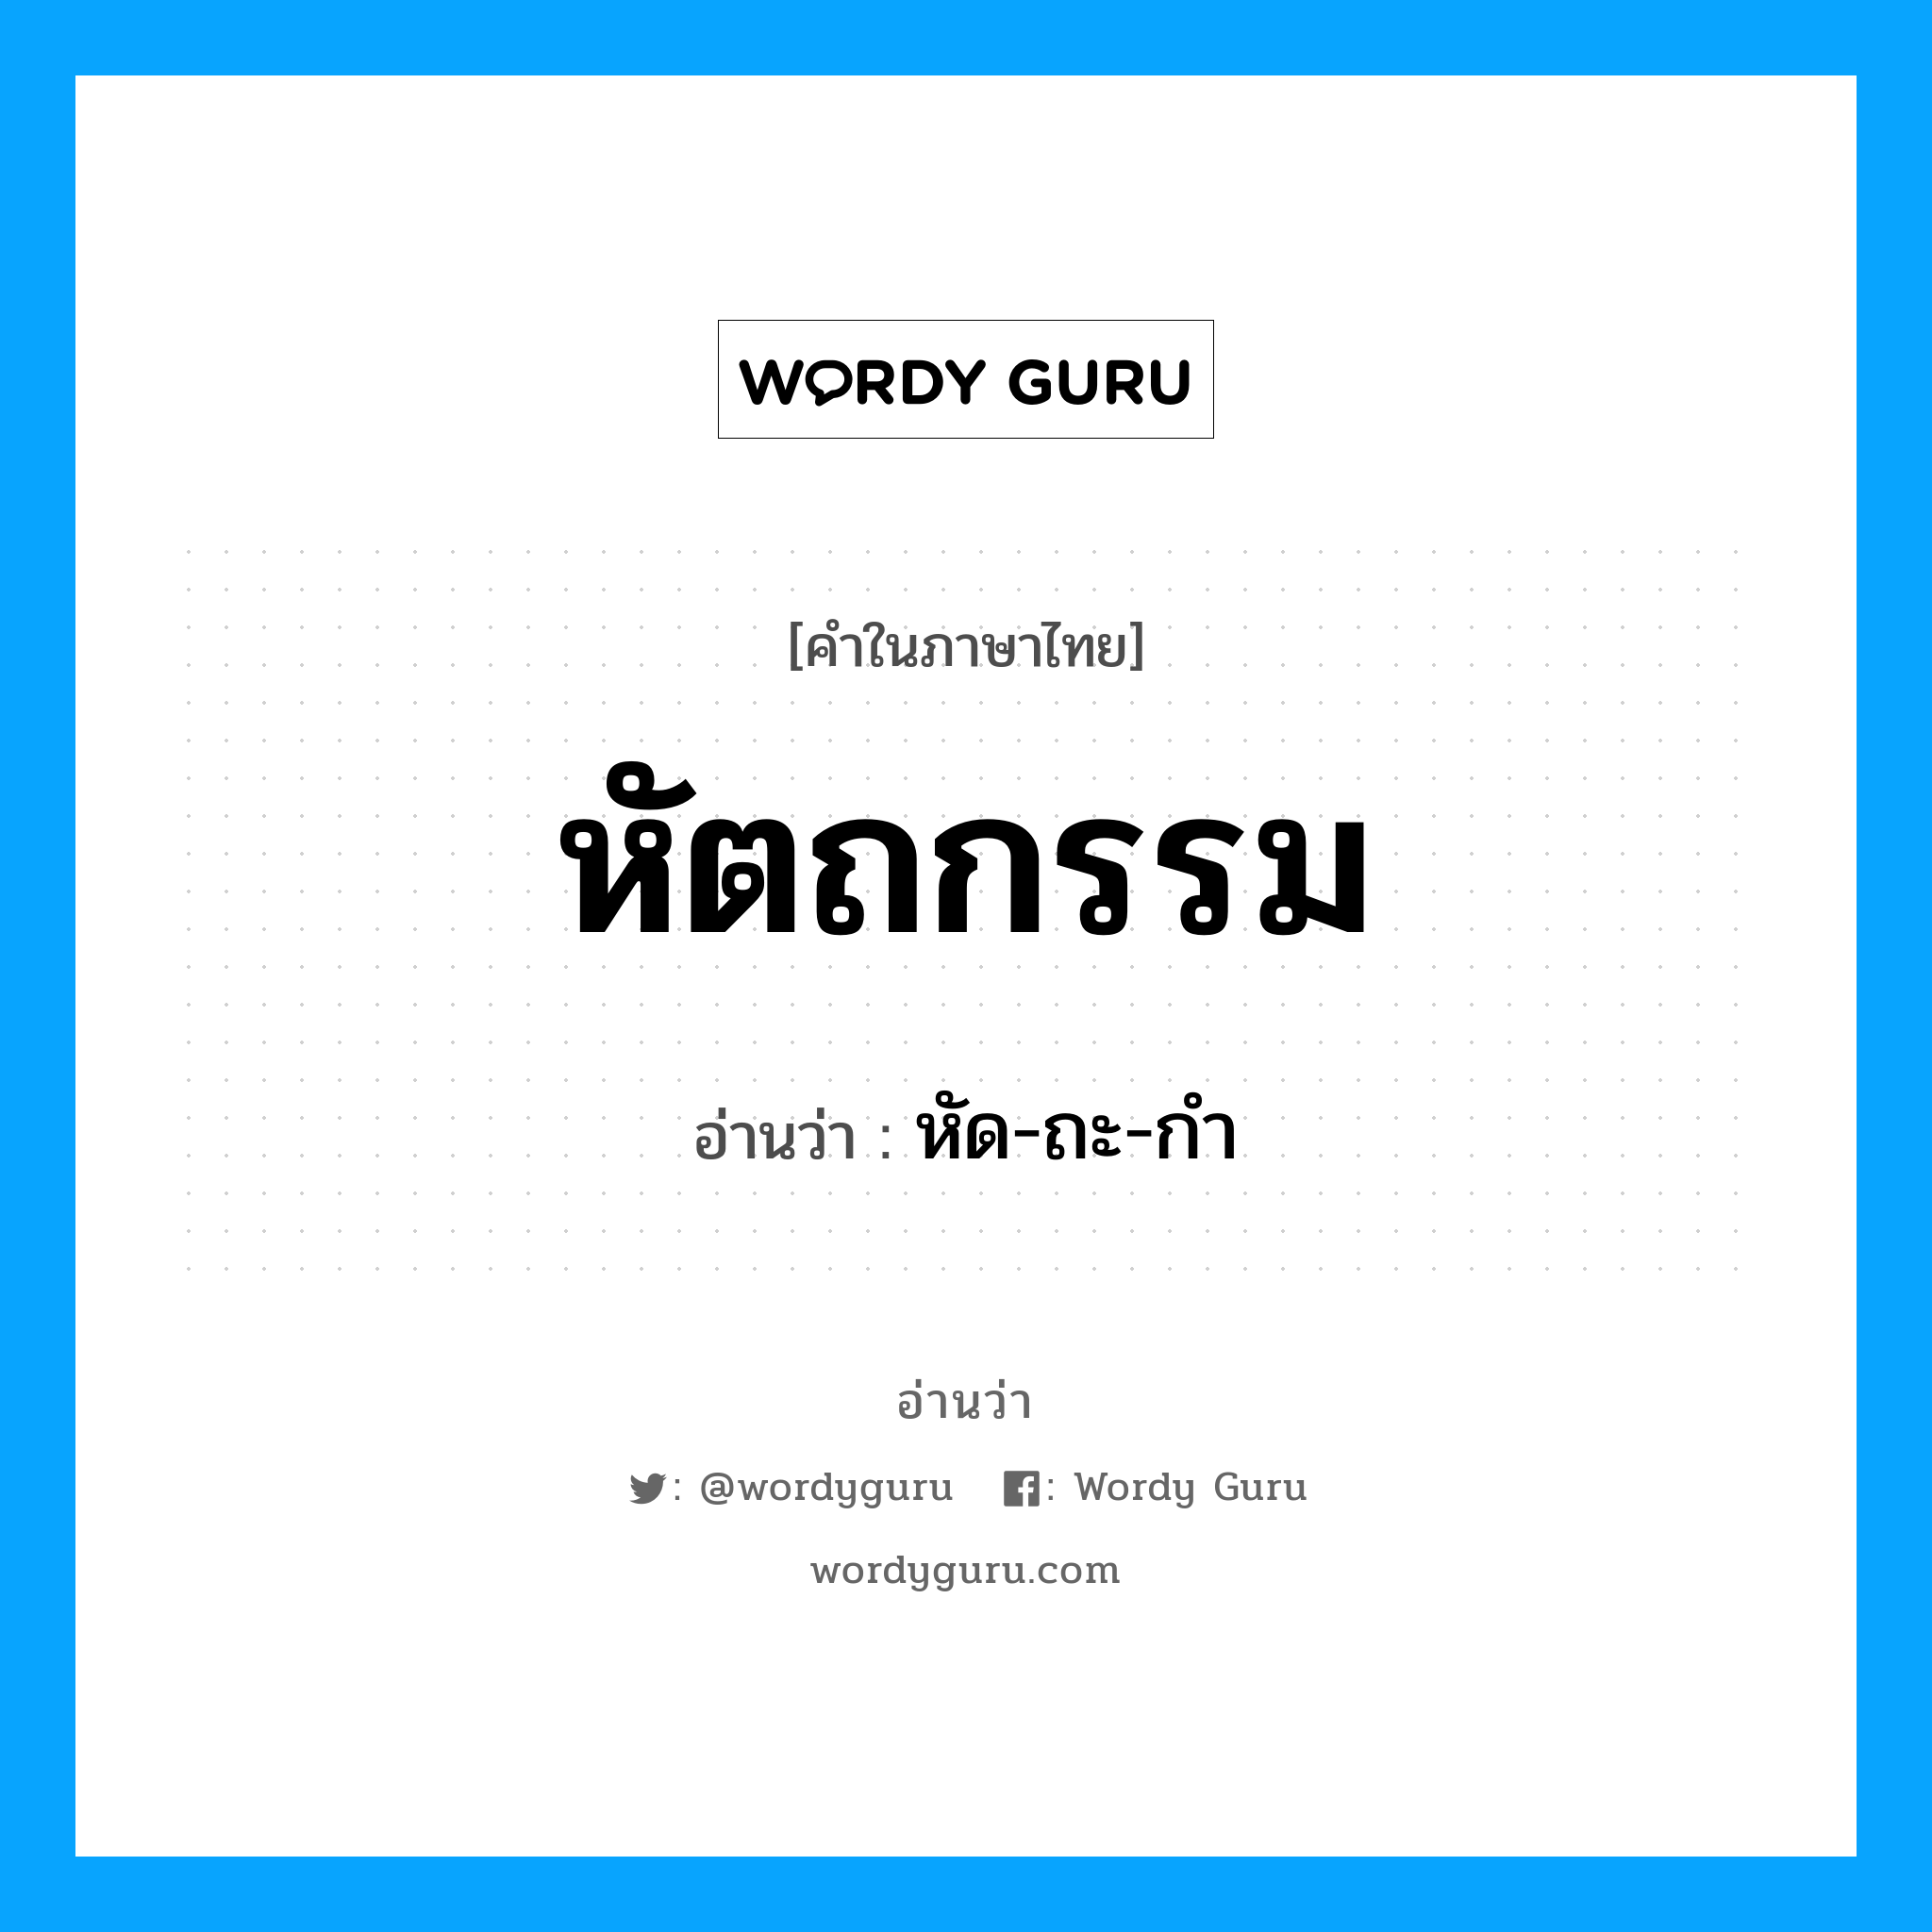 หัด-ถะ-กำ เป็นคำอ่านของคำไหน?, คำในภาษาไทย หัด-ถะ-กำ อ่านว่า หัตถกรรม